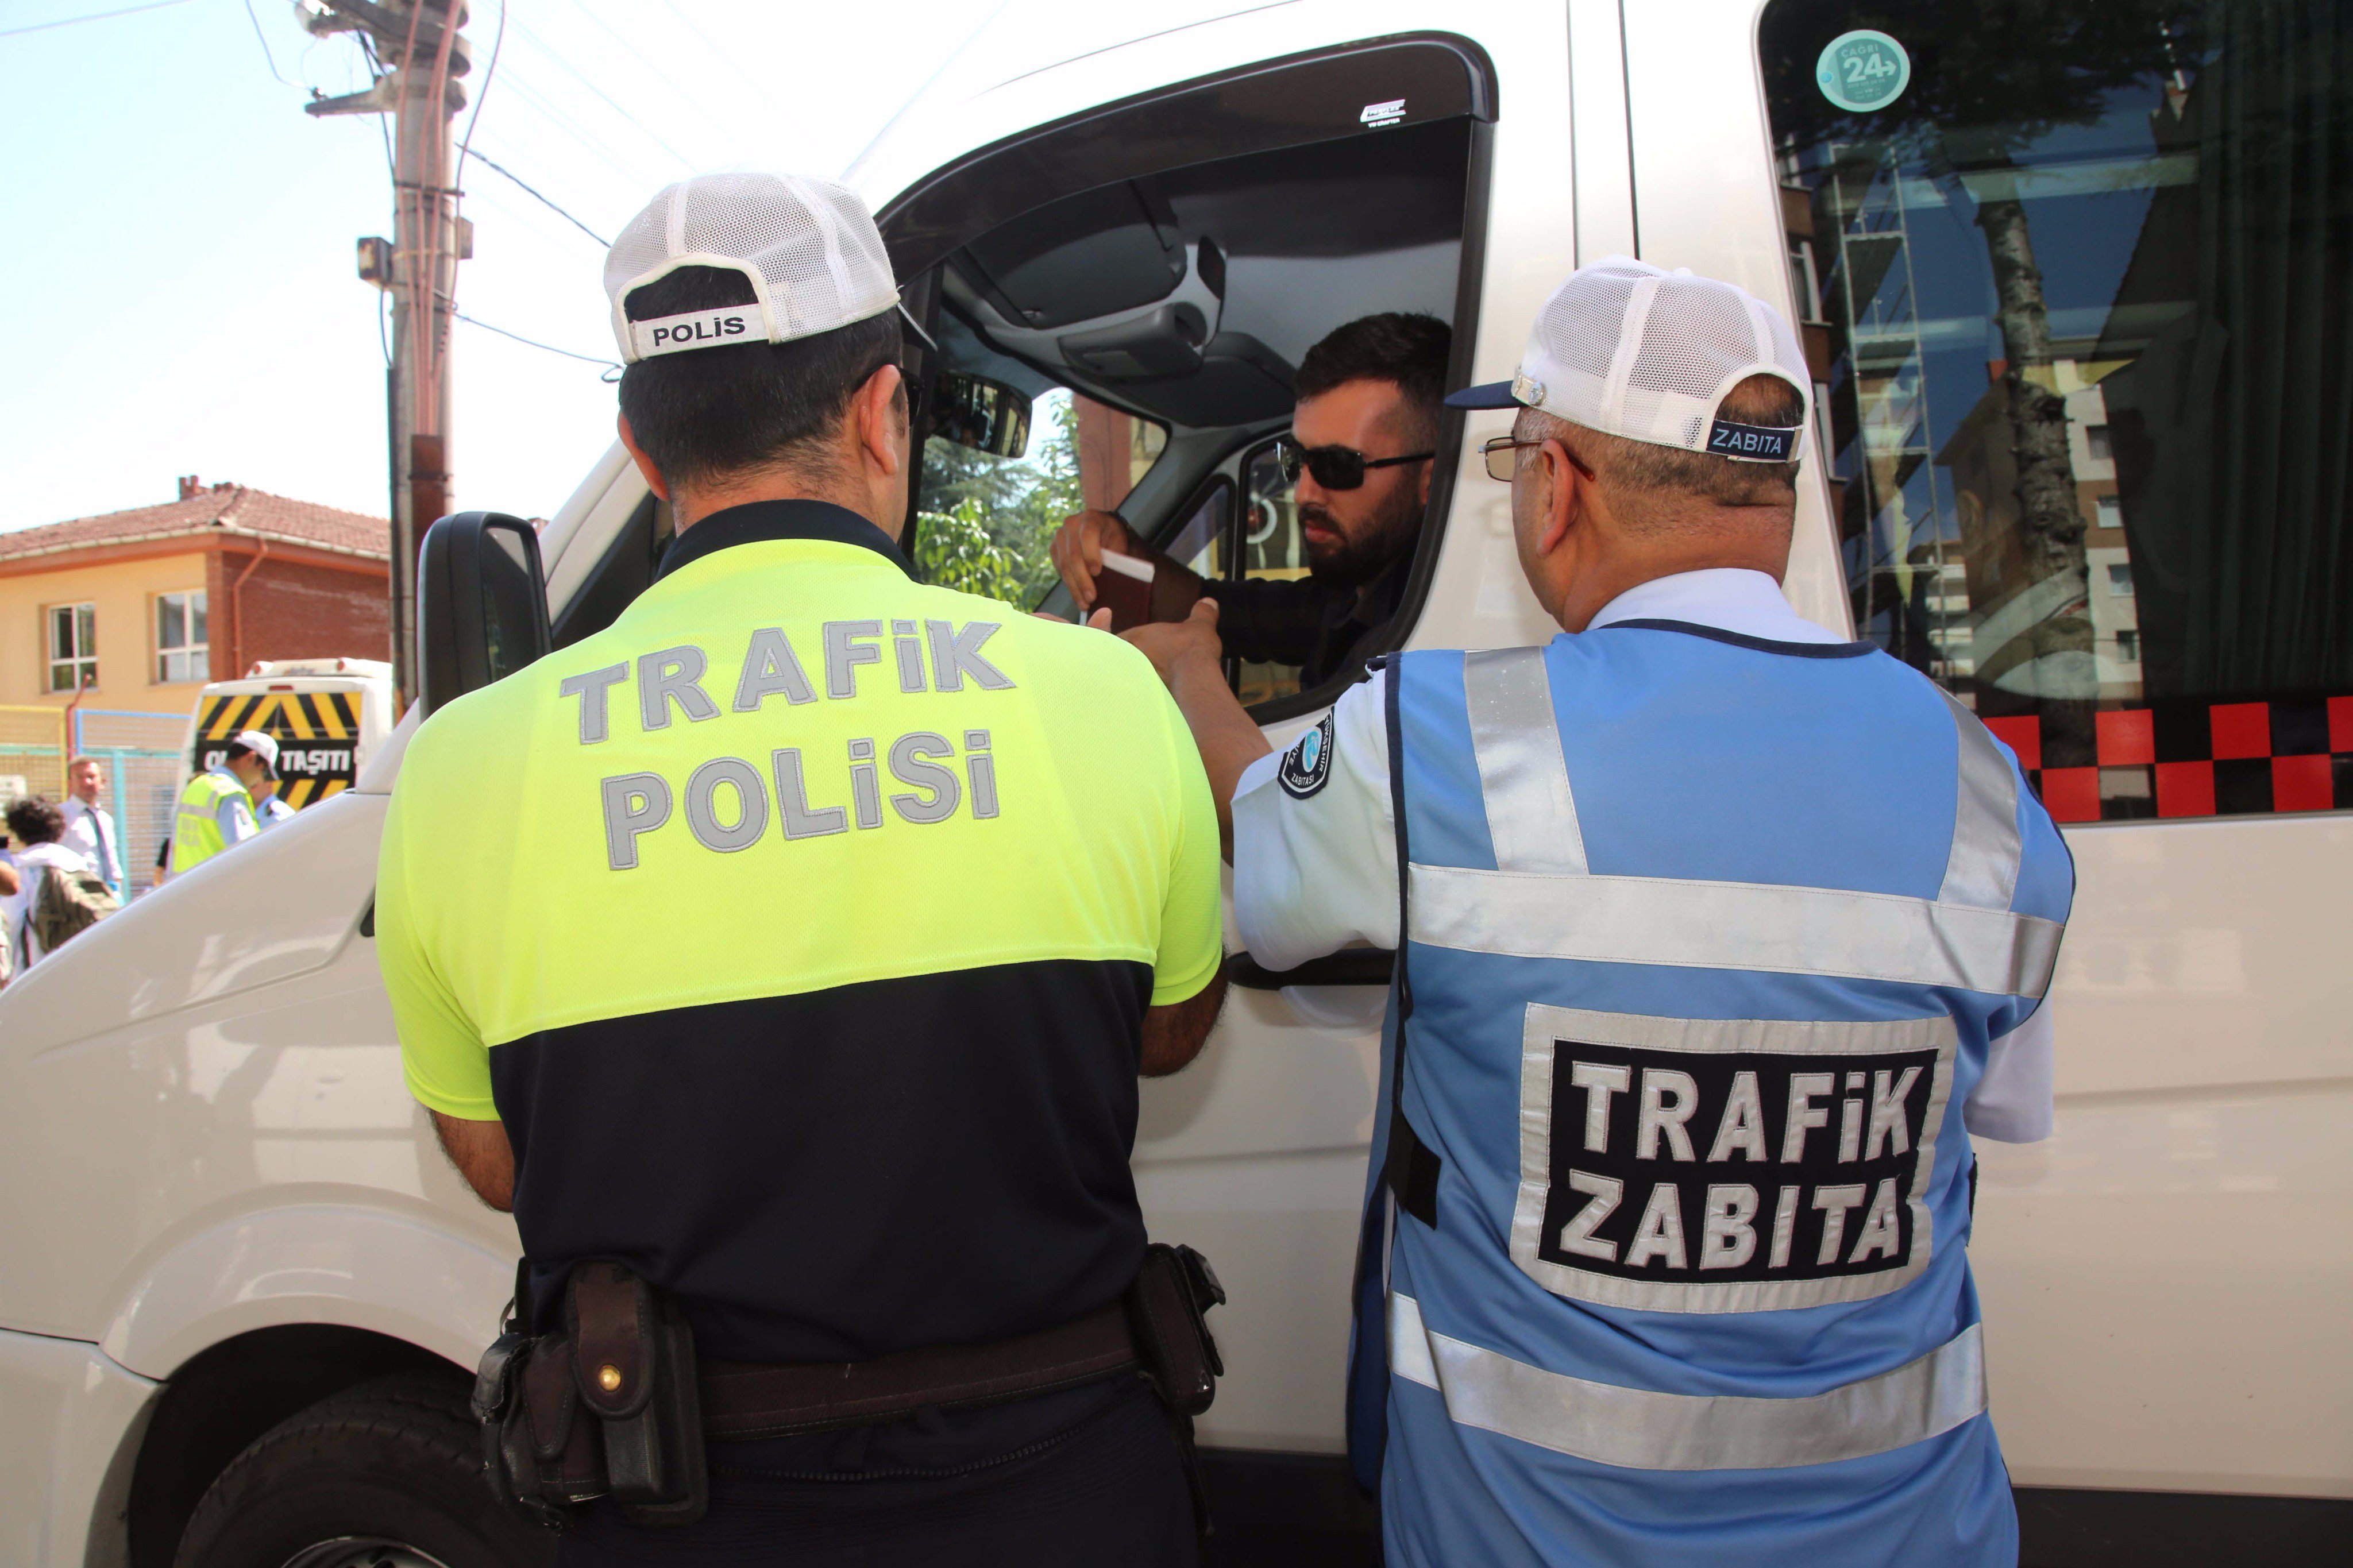 Eskişehir Büyükşehir Belediyesi on Twitter: "Trafik Zabıta ekiplerimiz,  Emniyet personeli ile birlikte okul servislerinin denetimlerine aralıksız  olarak devam ediyor. https://t.co/Ex7X90dxZY" / Twitter